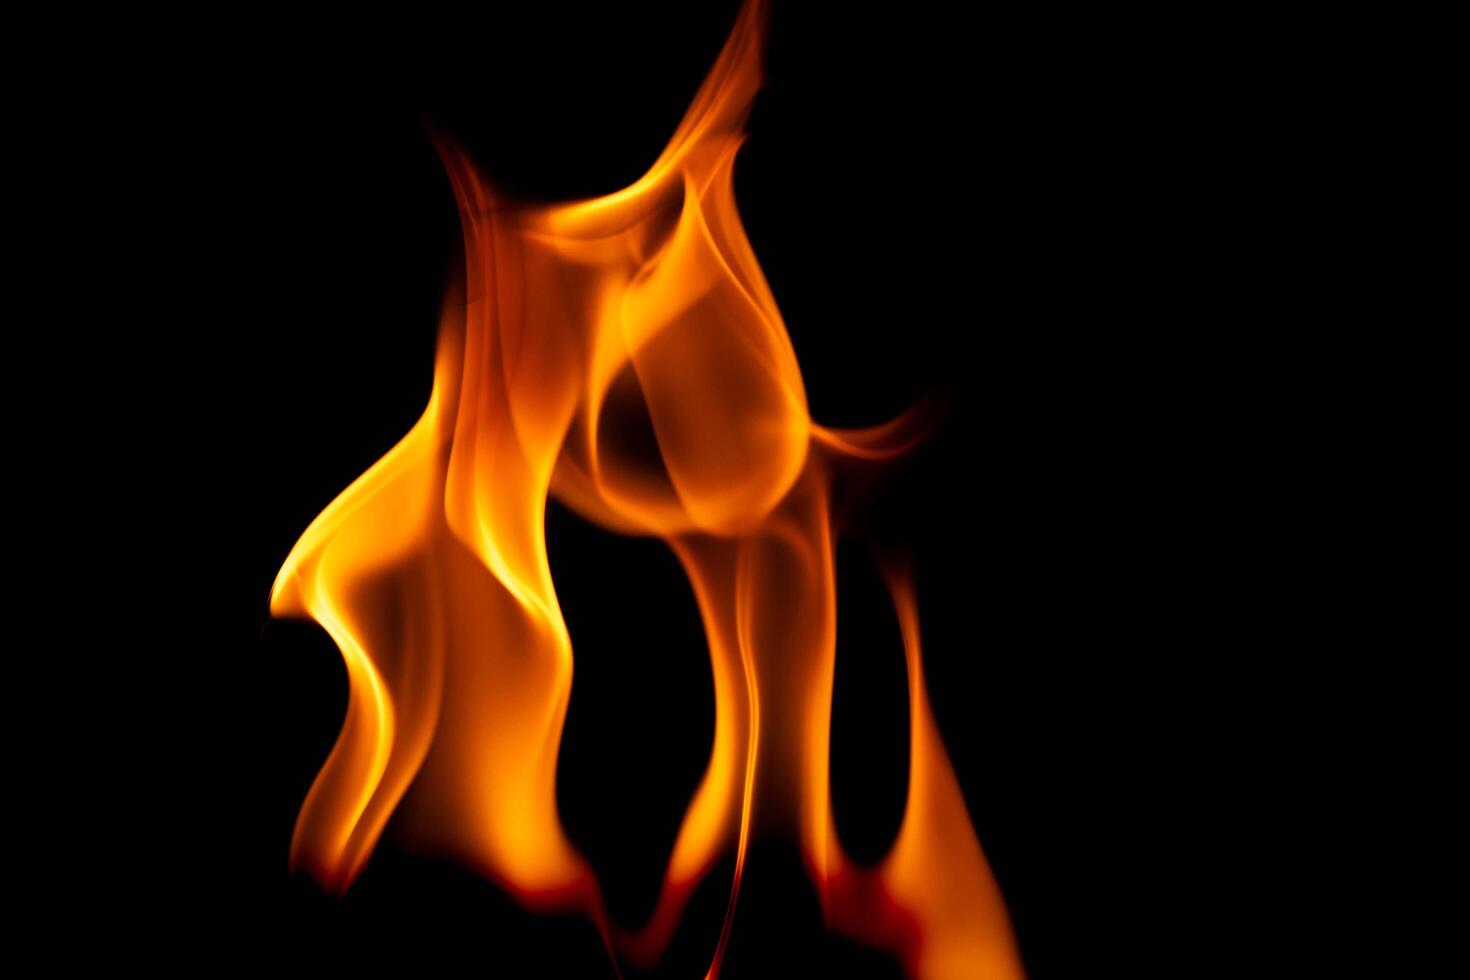 heet vlammen Aan een zwart achtergrond. mooi vlam van brand in de donker. abstract van brandend vlammen en rook. foto